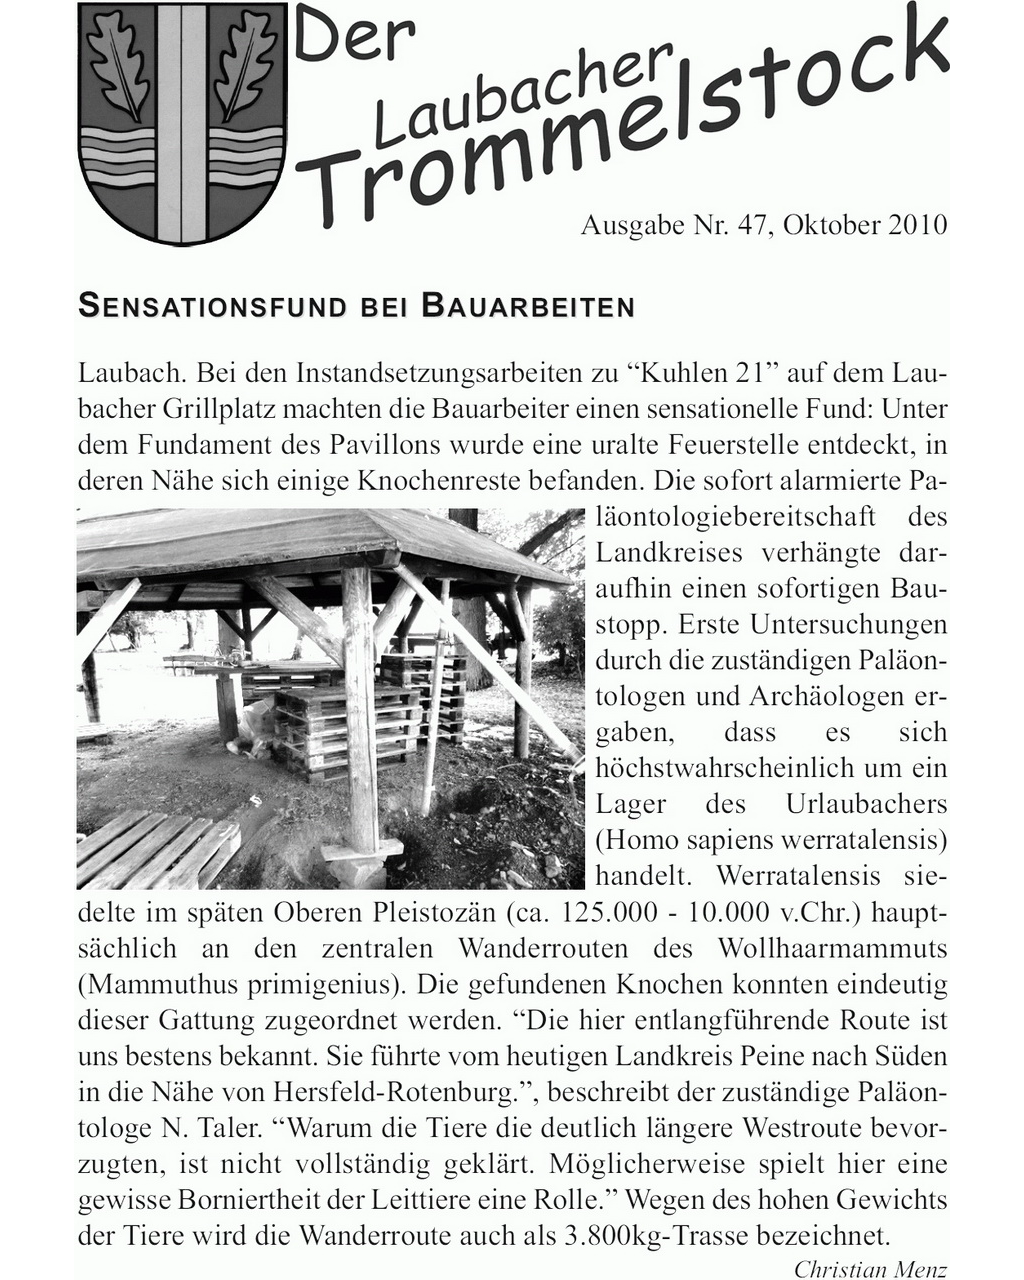 Laubacher-Trommelstock-Titelseite-047